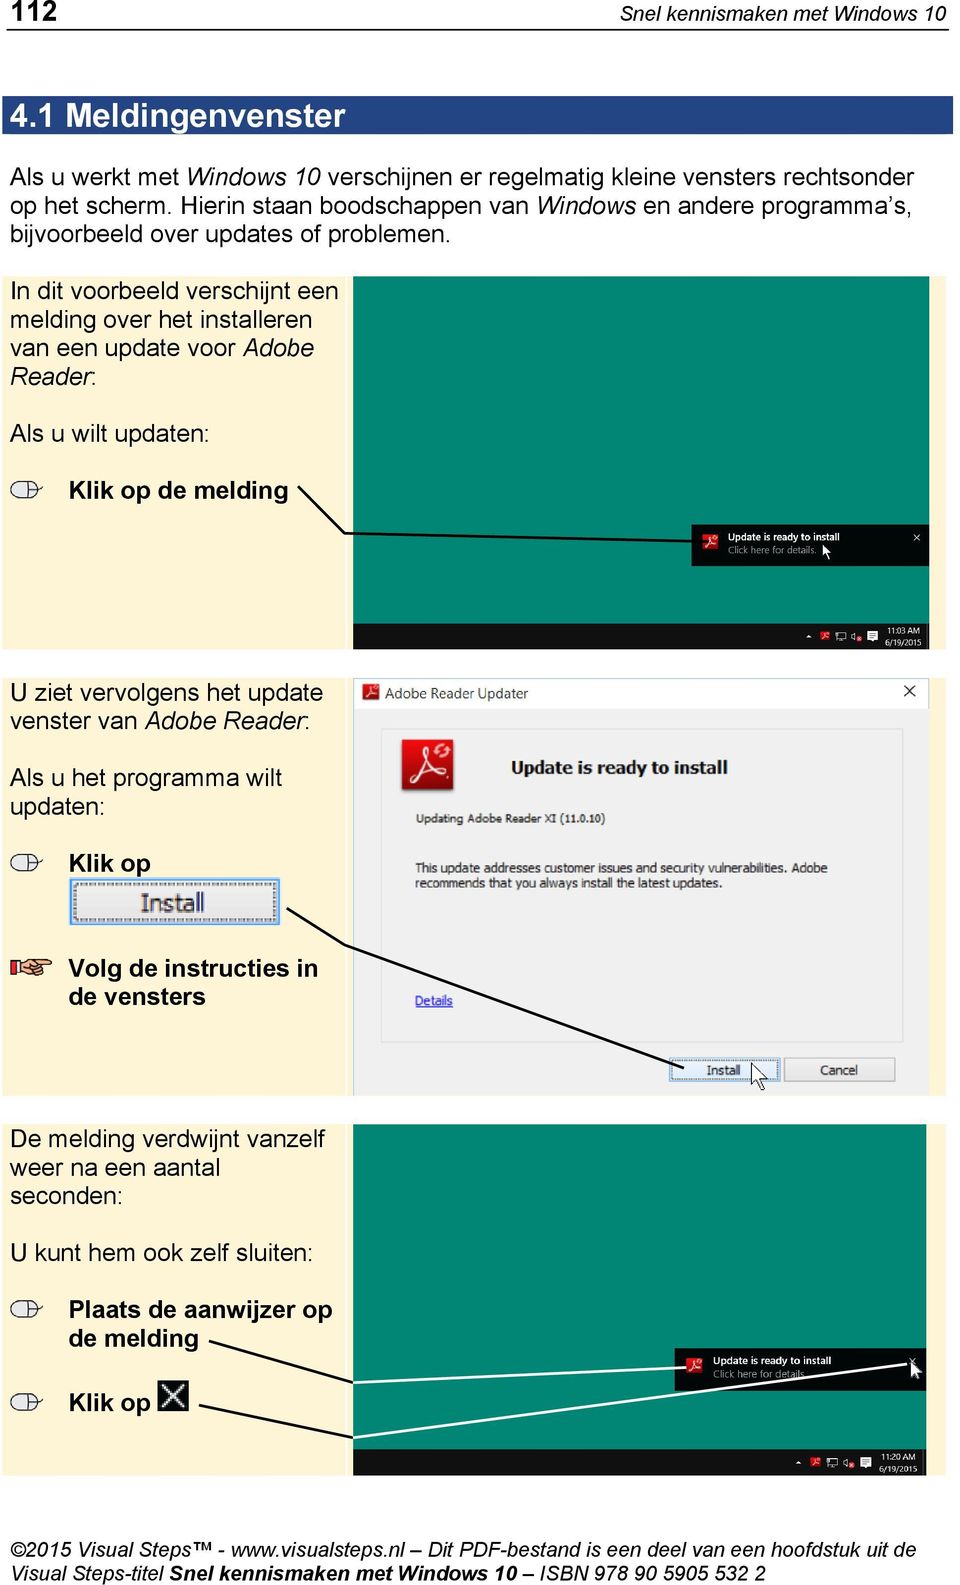 In dit voorbeeld verschijnt een melding over het installeren van een update voor Adobe Reader: Als u wilt updaten: de melding U ziet vervolgens het update